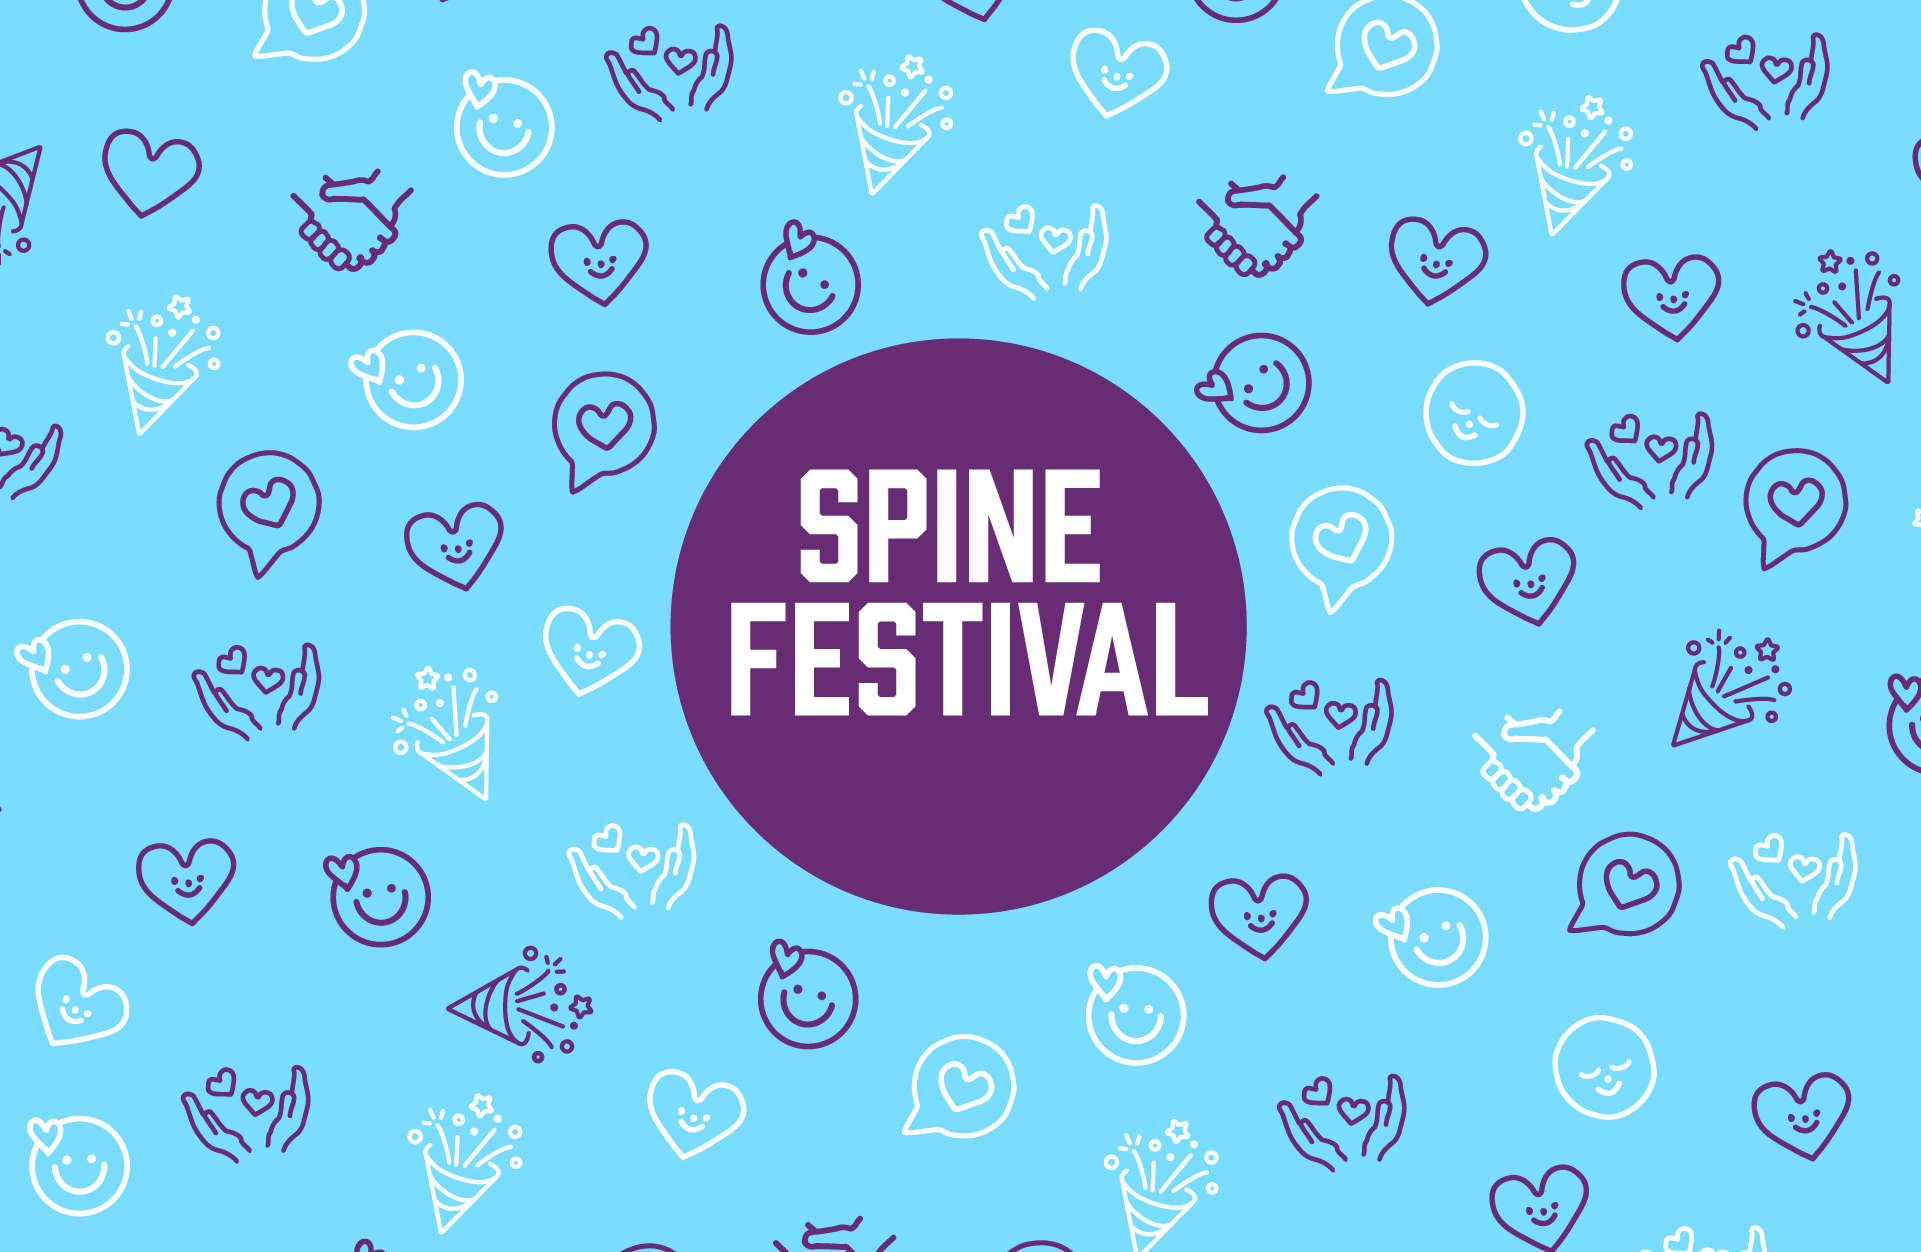 Spine Festival